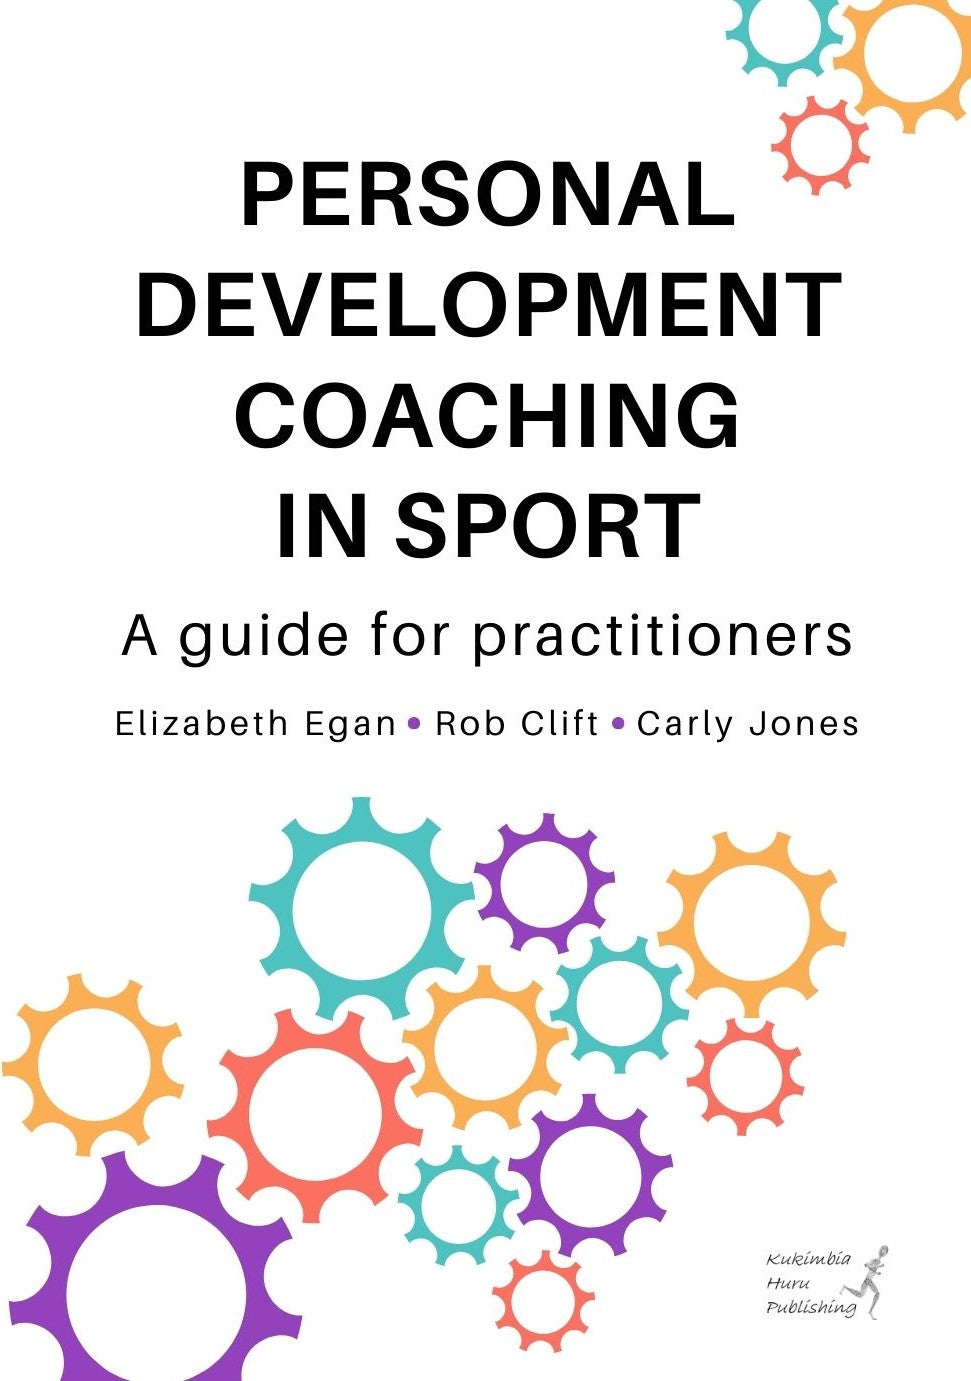 Book: Personal Development Coaching in Sport